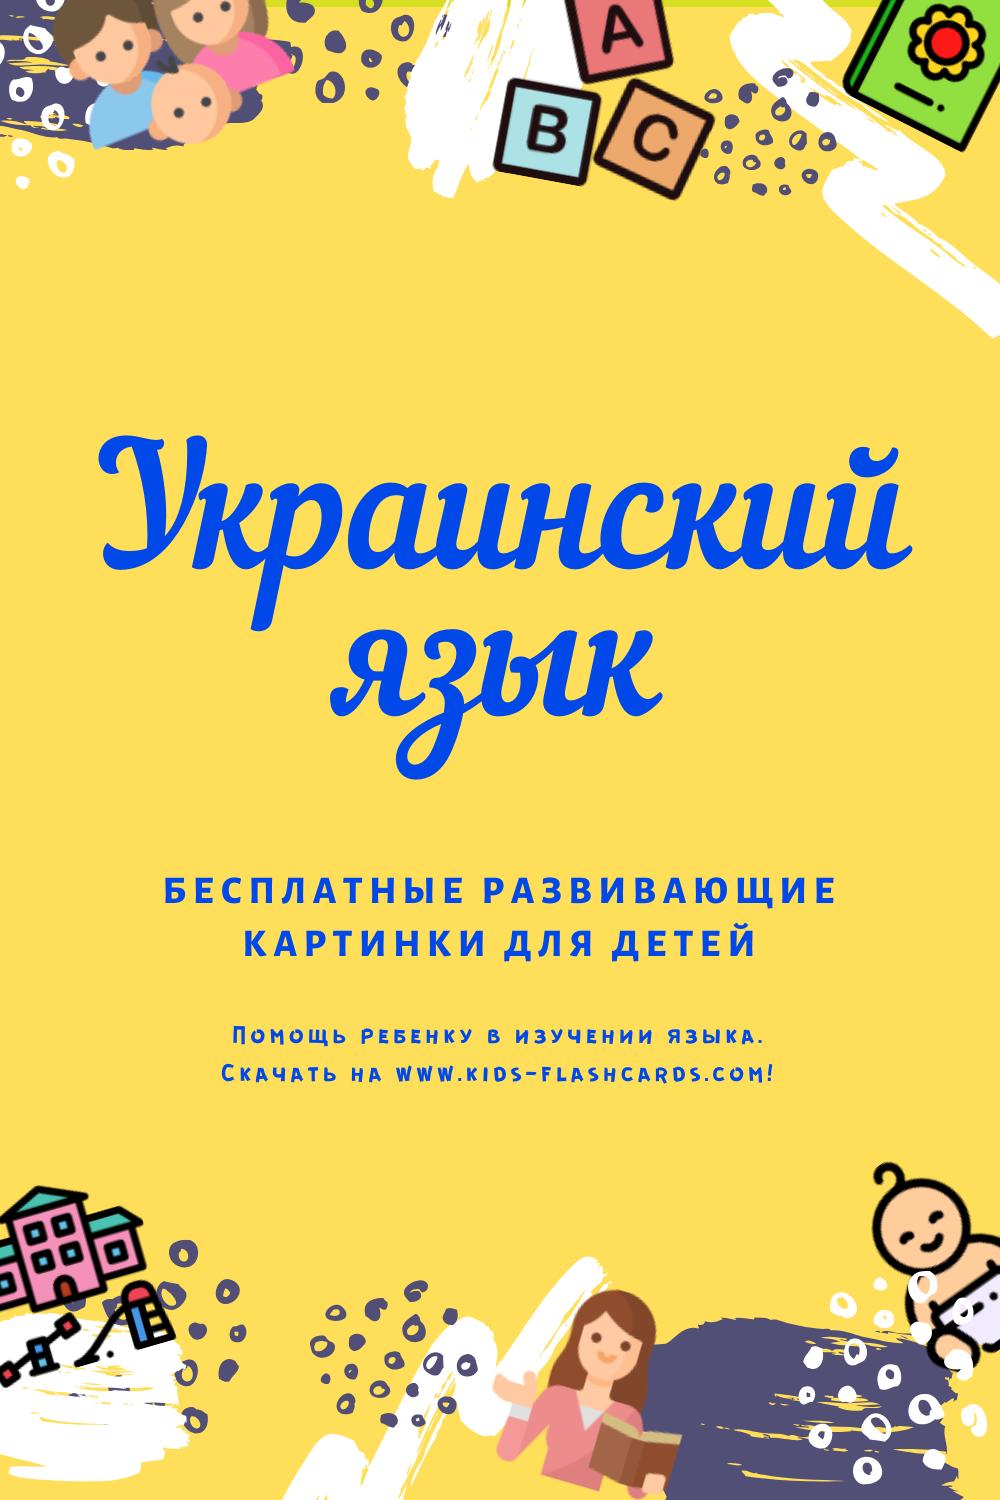 Украинский словарь картинок